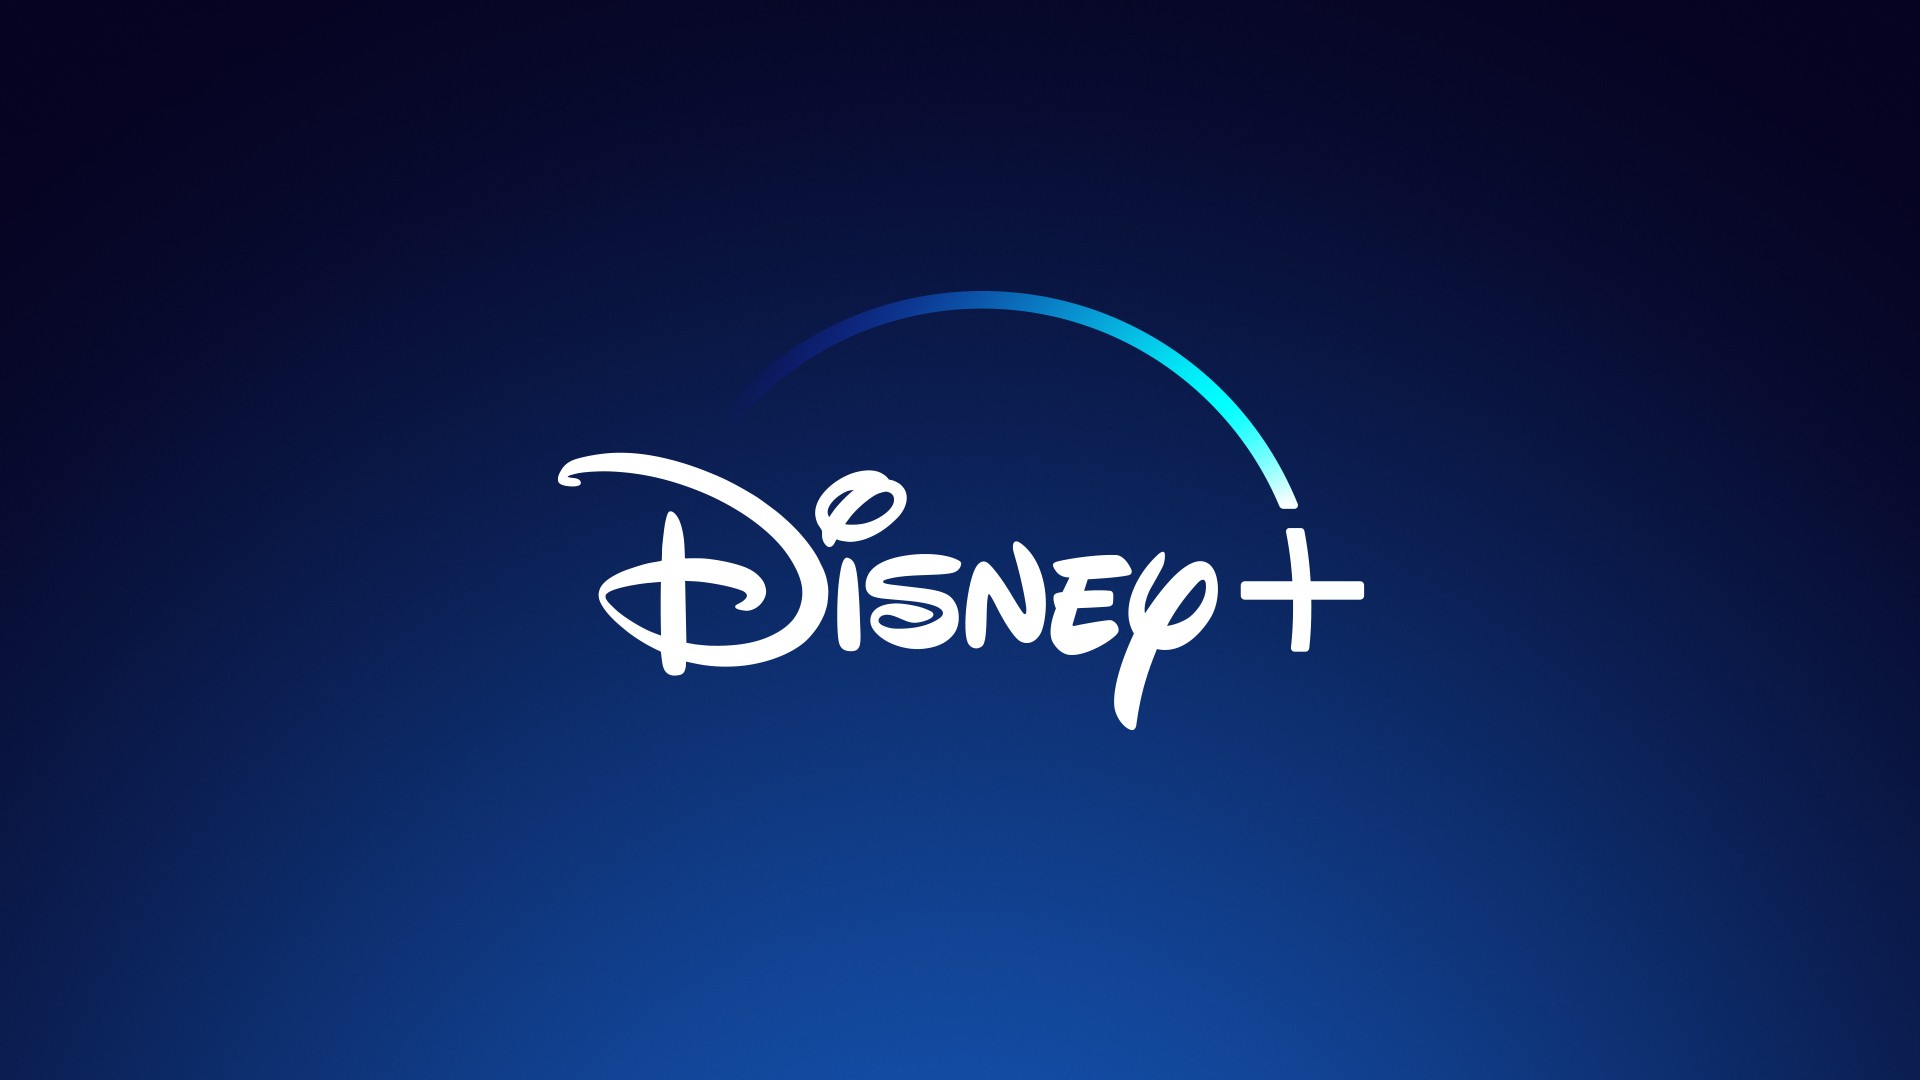 Disney+ chega a 73 milhões de assinantes